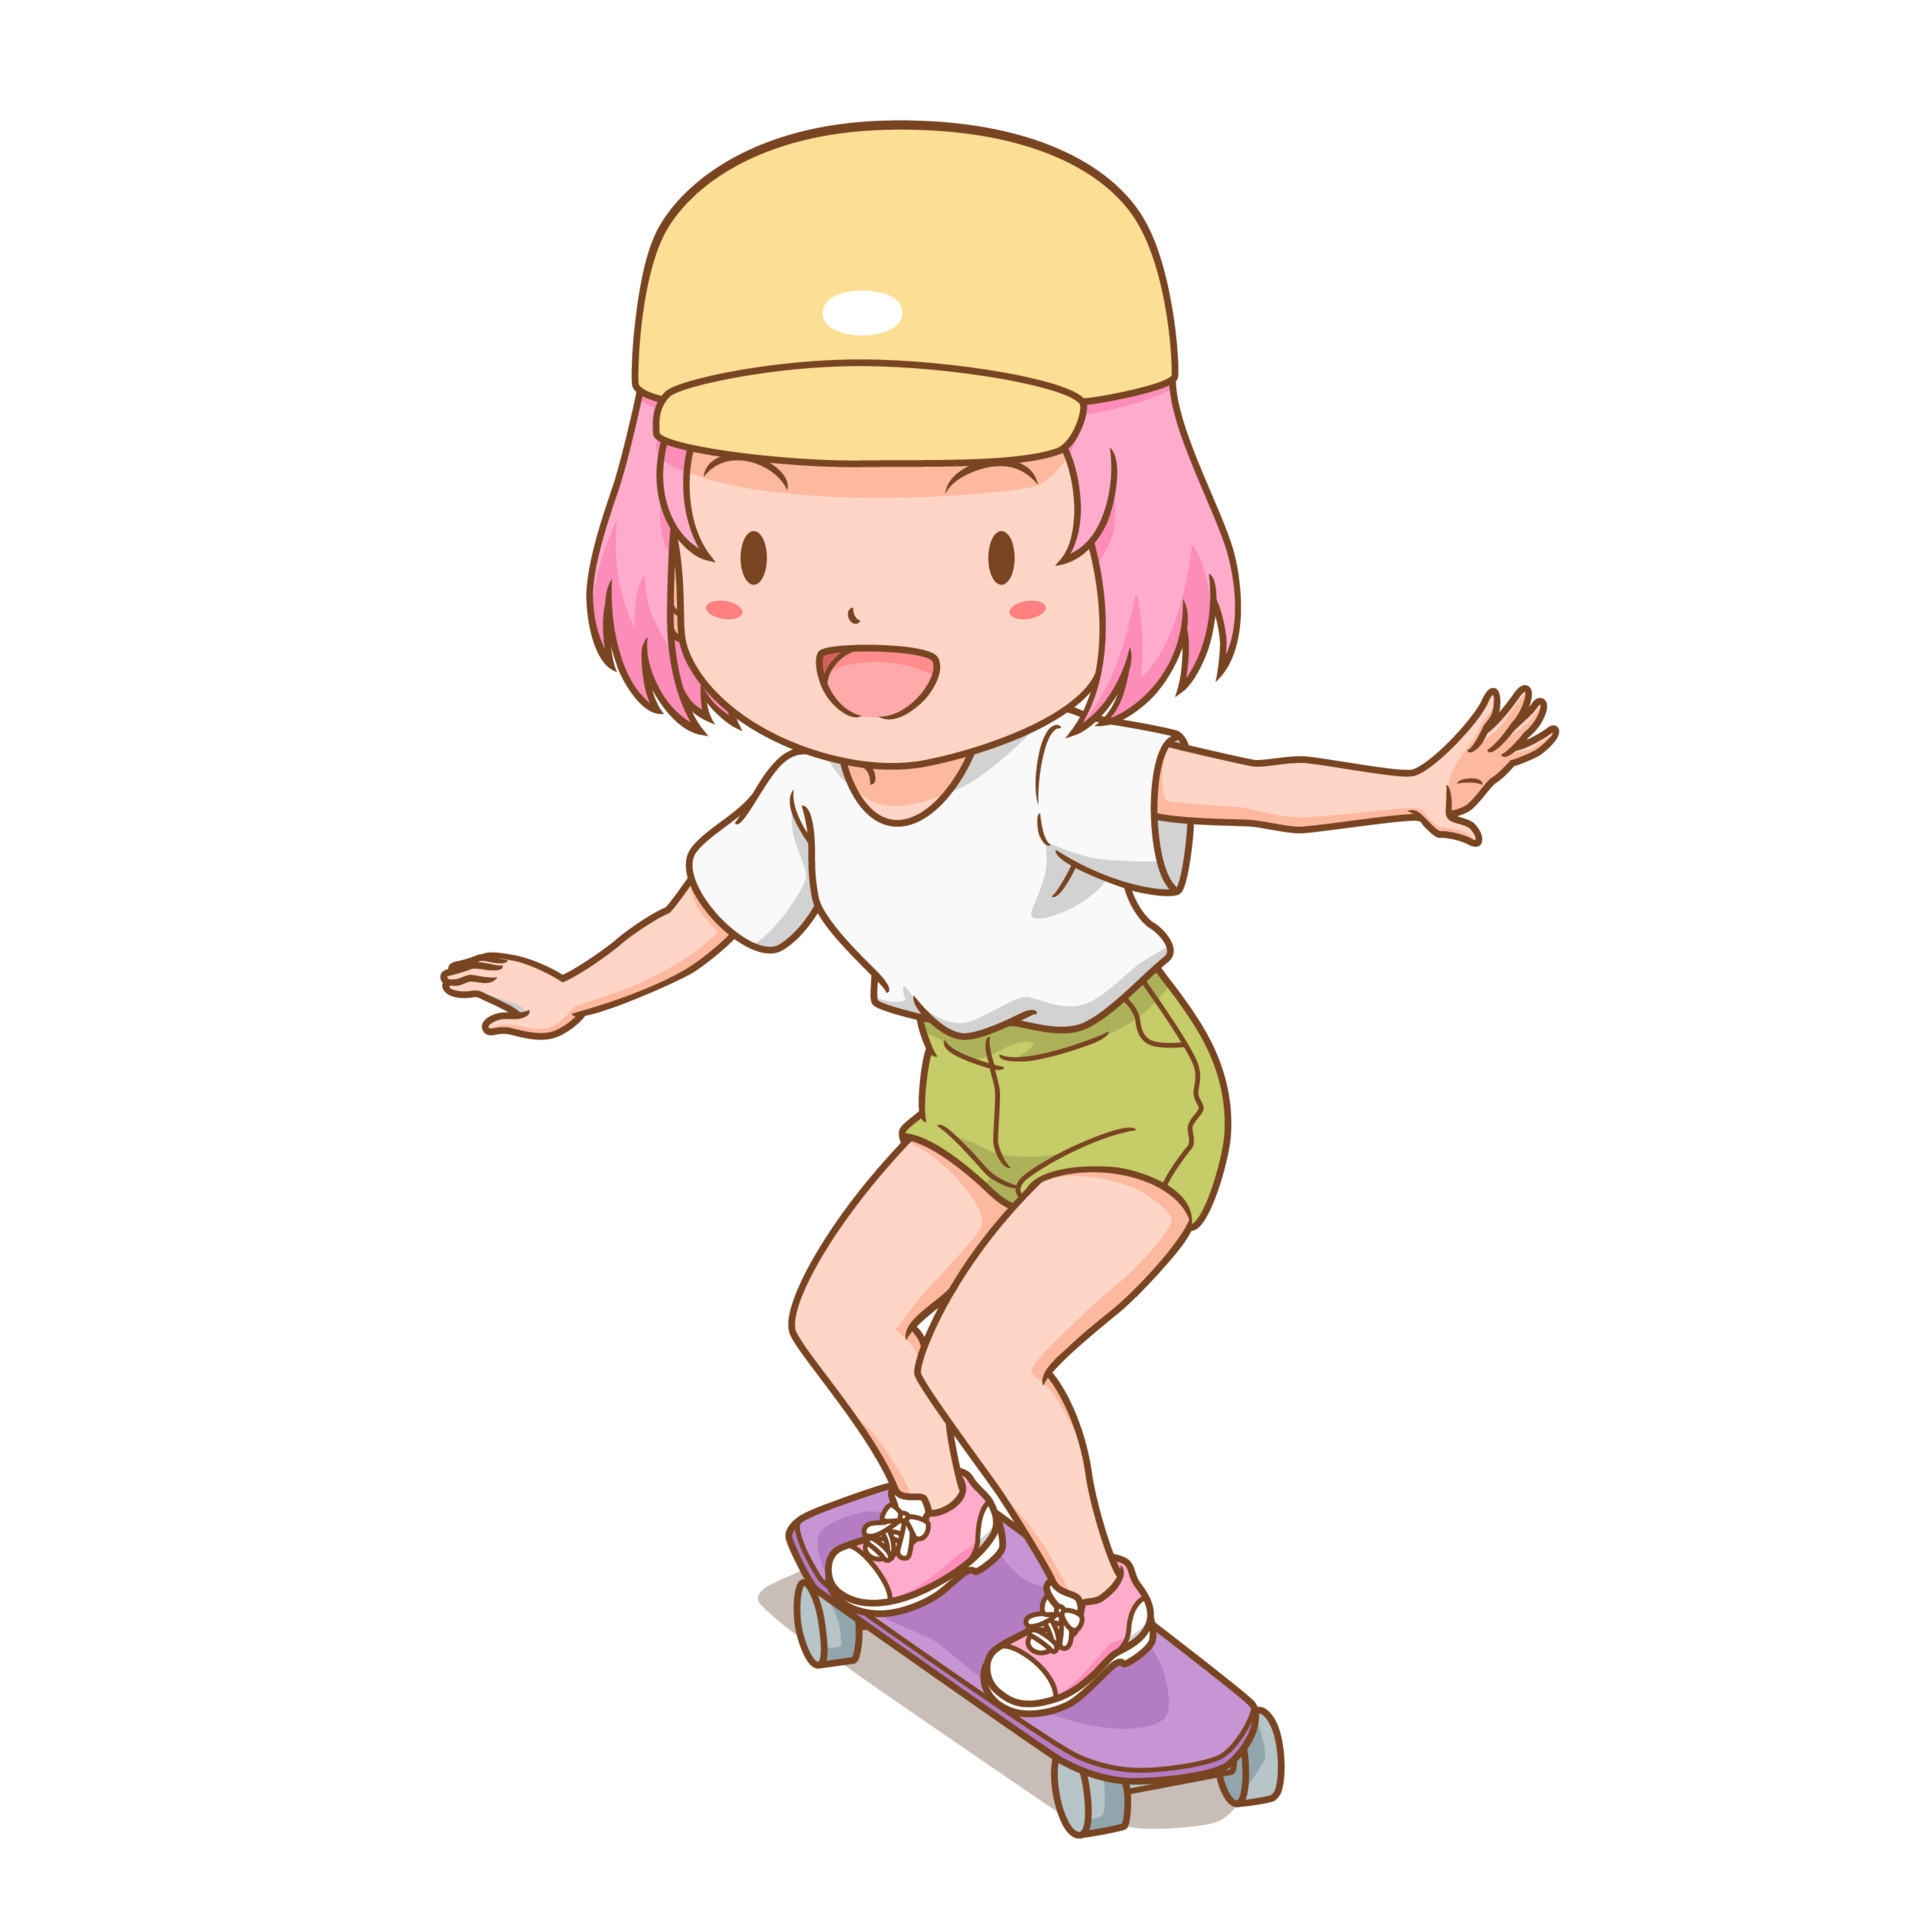 A Menina Está Montando Um Skate, Desenho Colorido Dos Desenhos